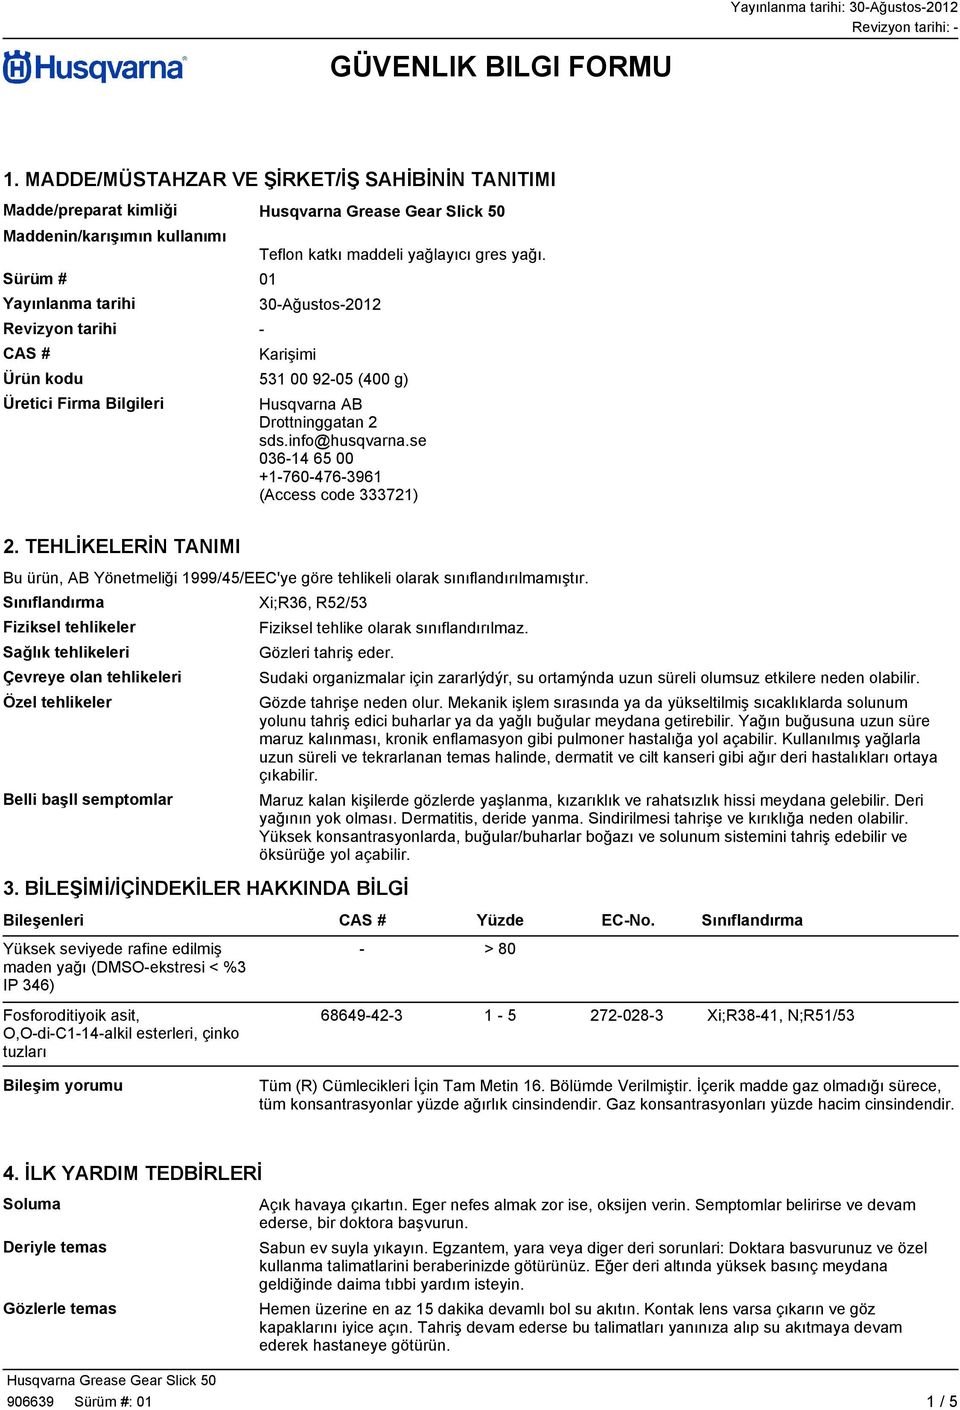 30-Ağustos-2012 Karişimi Ürün kodu 531 00 92-05 (400 g) Üretici Firma Bilgileri Husqvarna AB Drottninggatan 2 sds.info@husqvarna.se 036-14 65 00 +1-760-476-3961 (Access code 333721) 2.